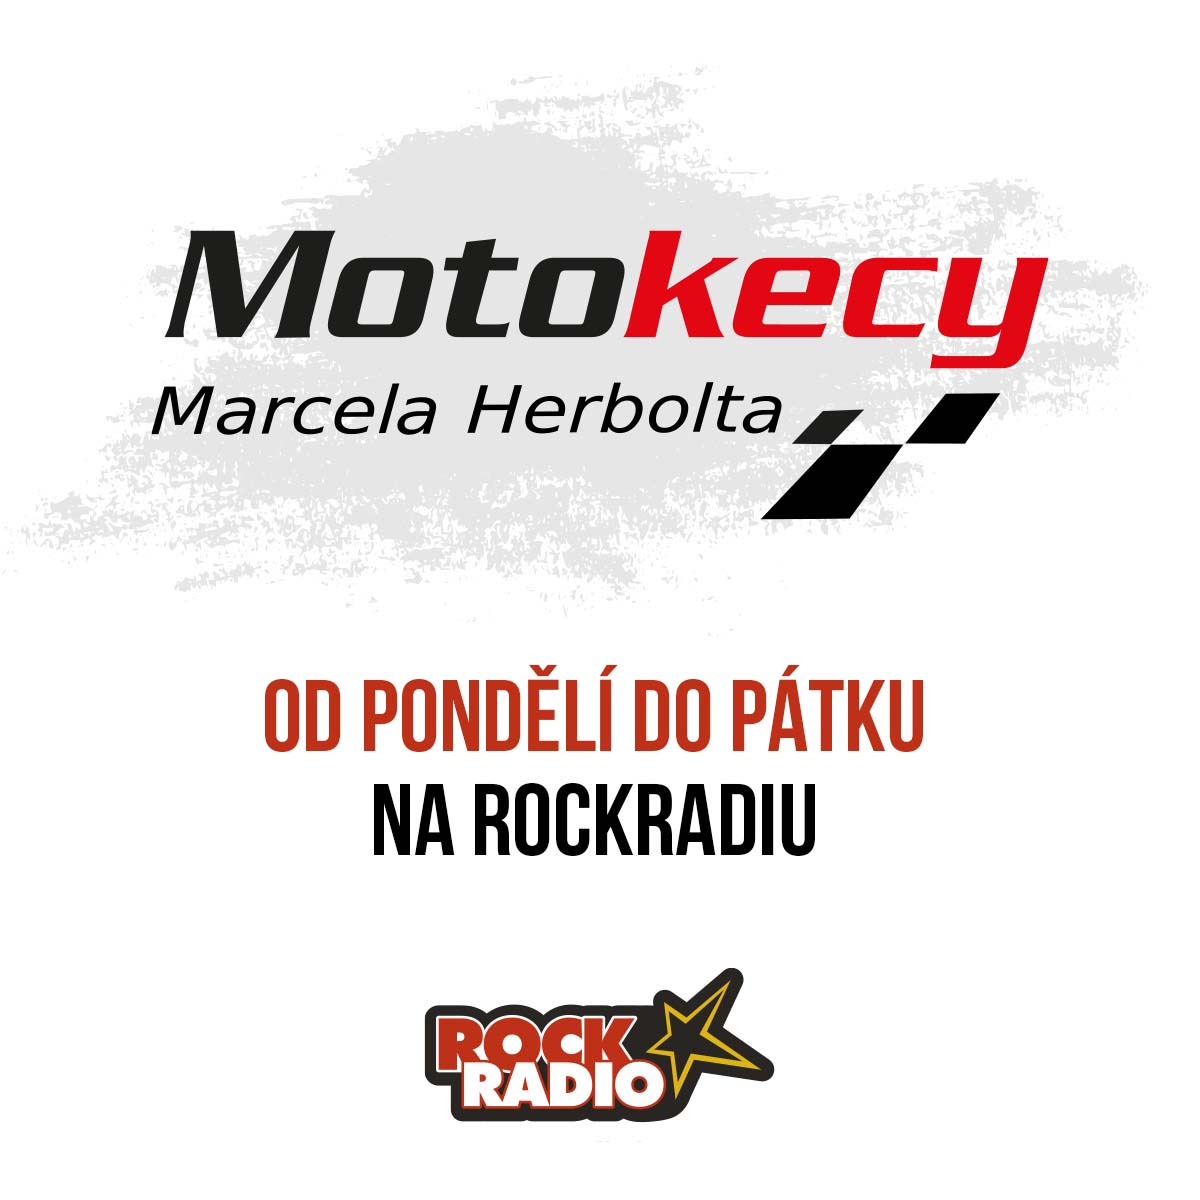 Motokecy Marcela Herbolta  na čtvrtek 14. září